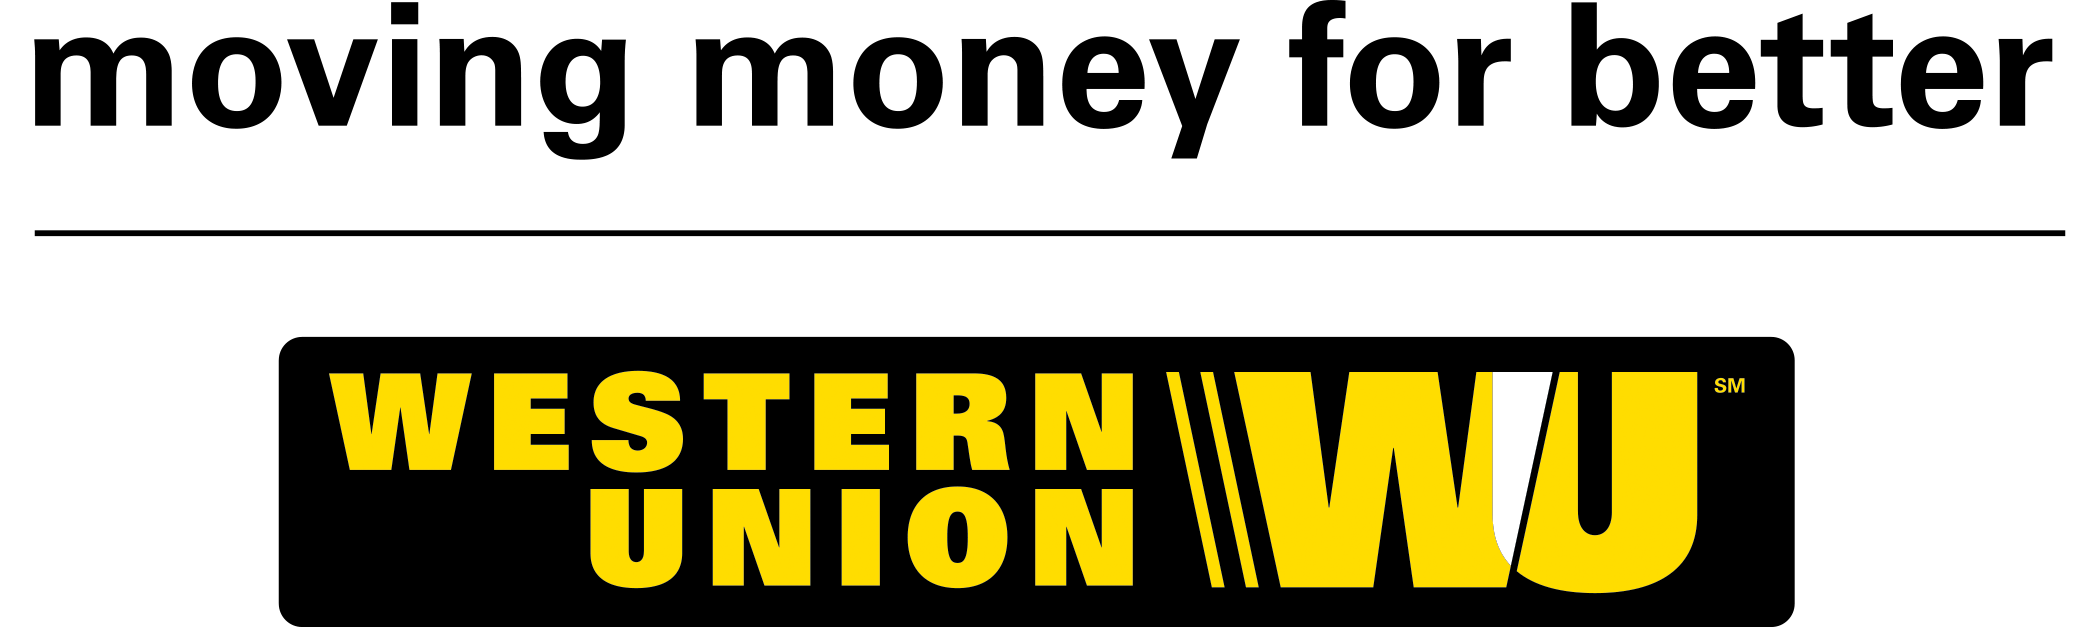 Western Union New Logo - Western Union